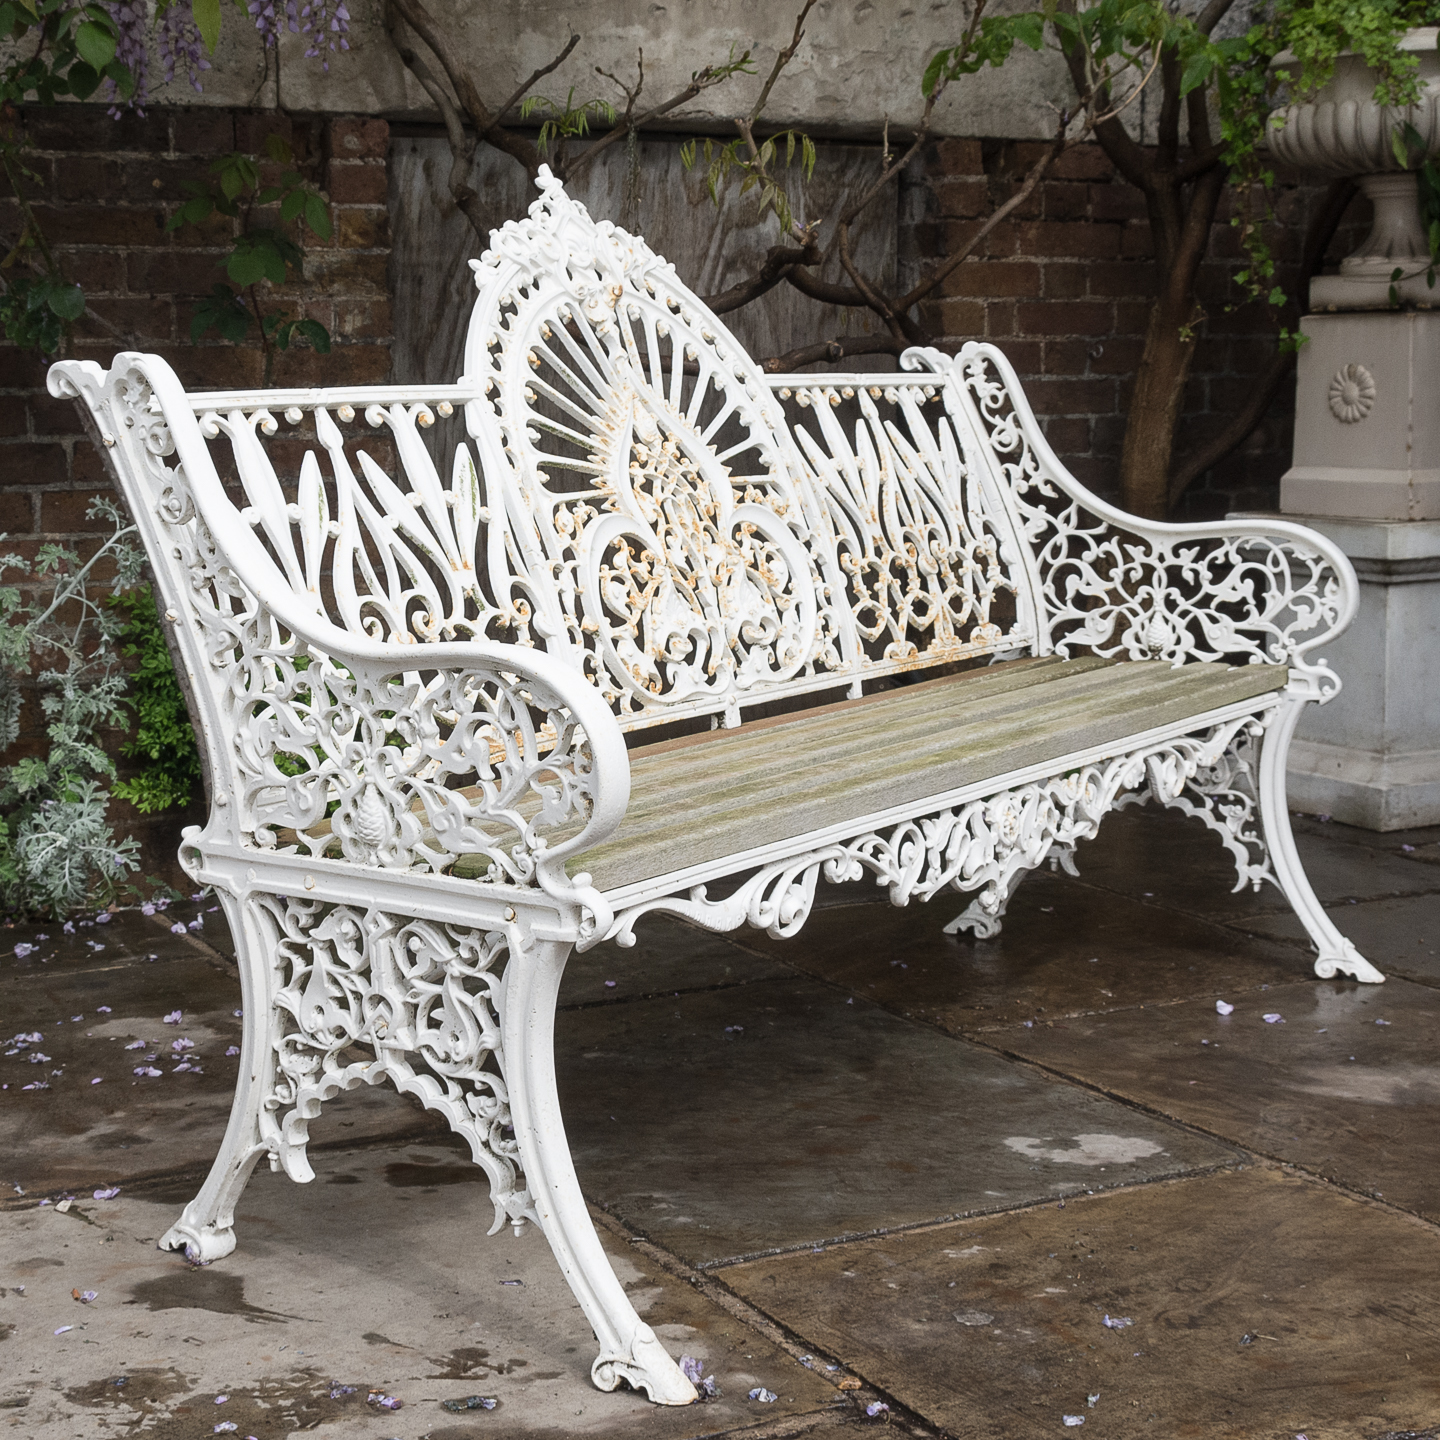  bench garden furniture